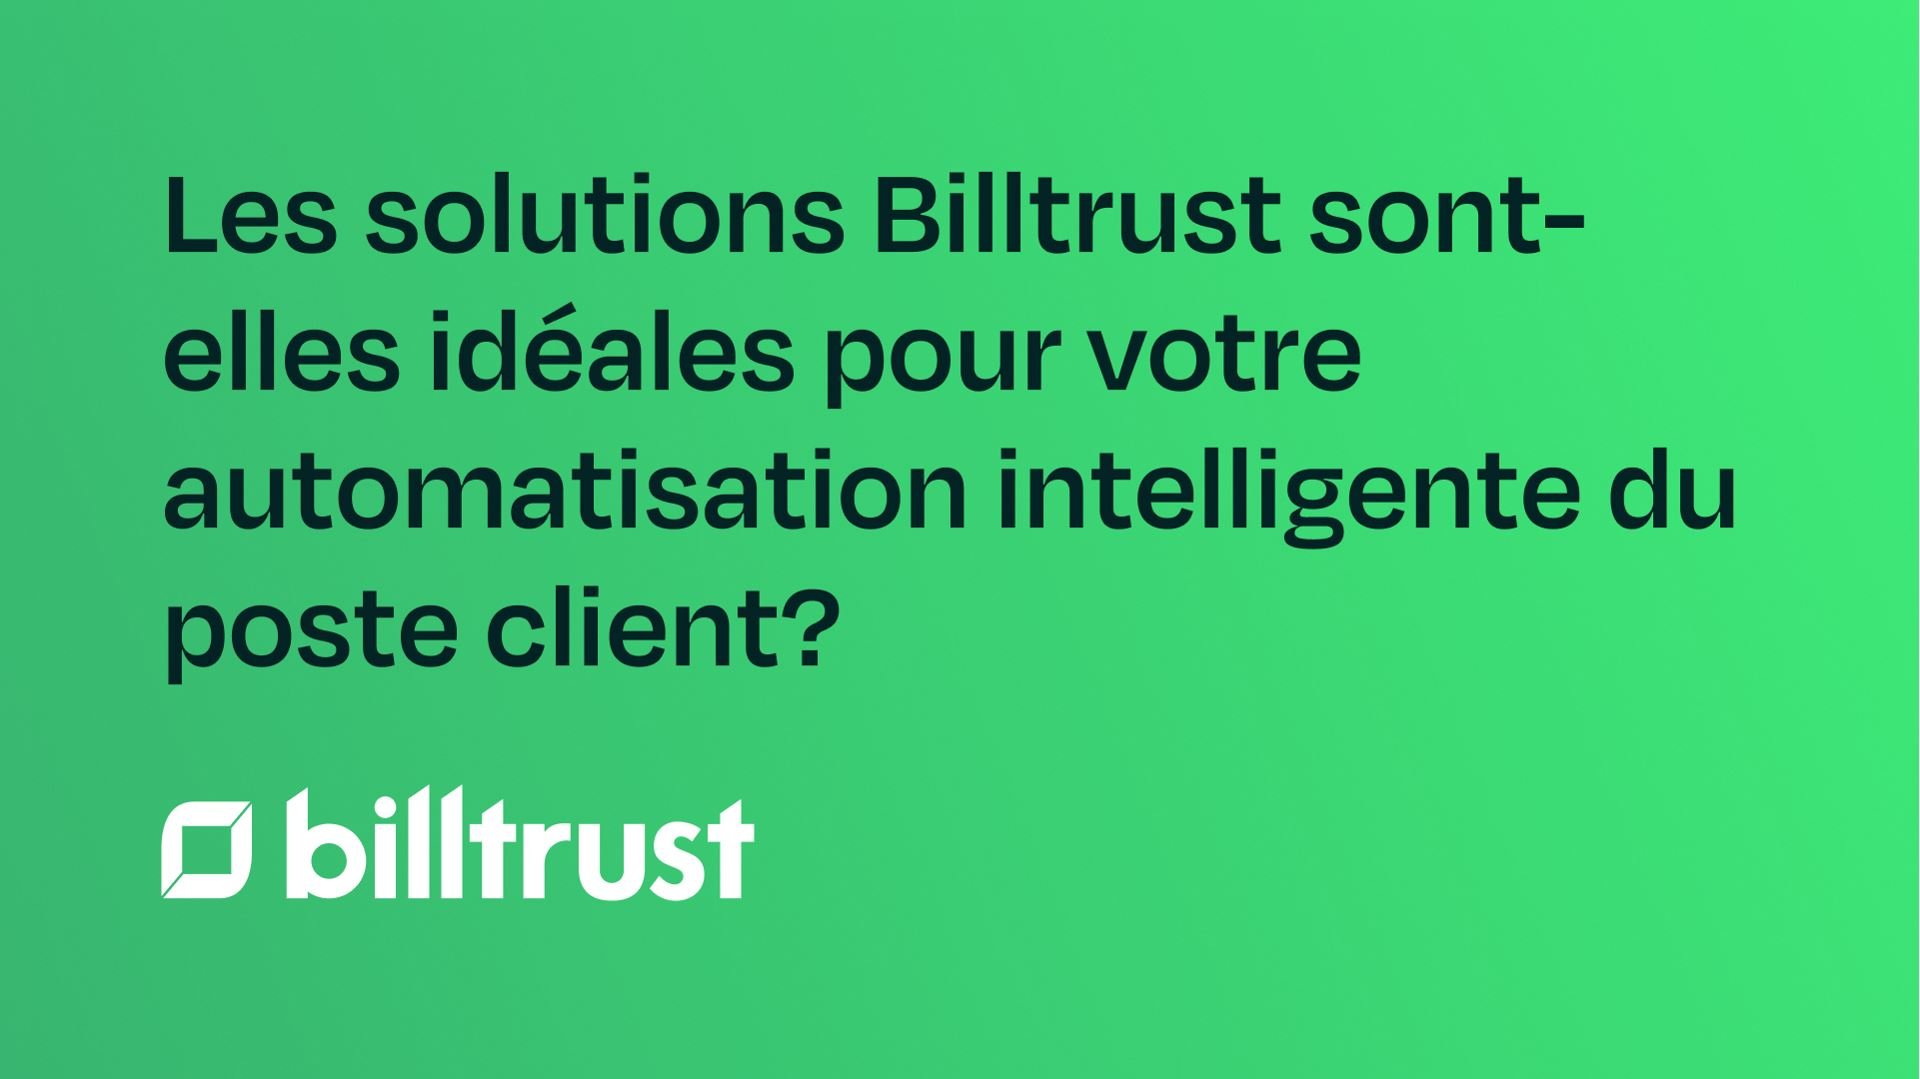 Les solutions Billtrust sont-elles idéales pour votre automatisation intelligente du poste client?